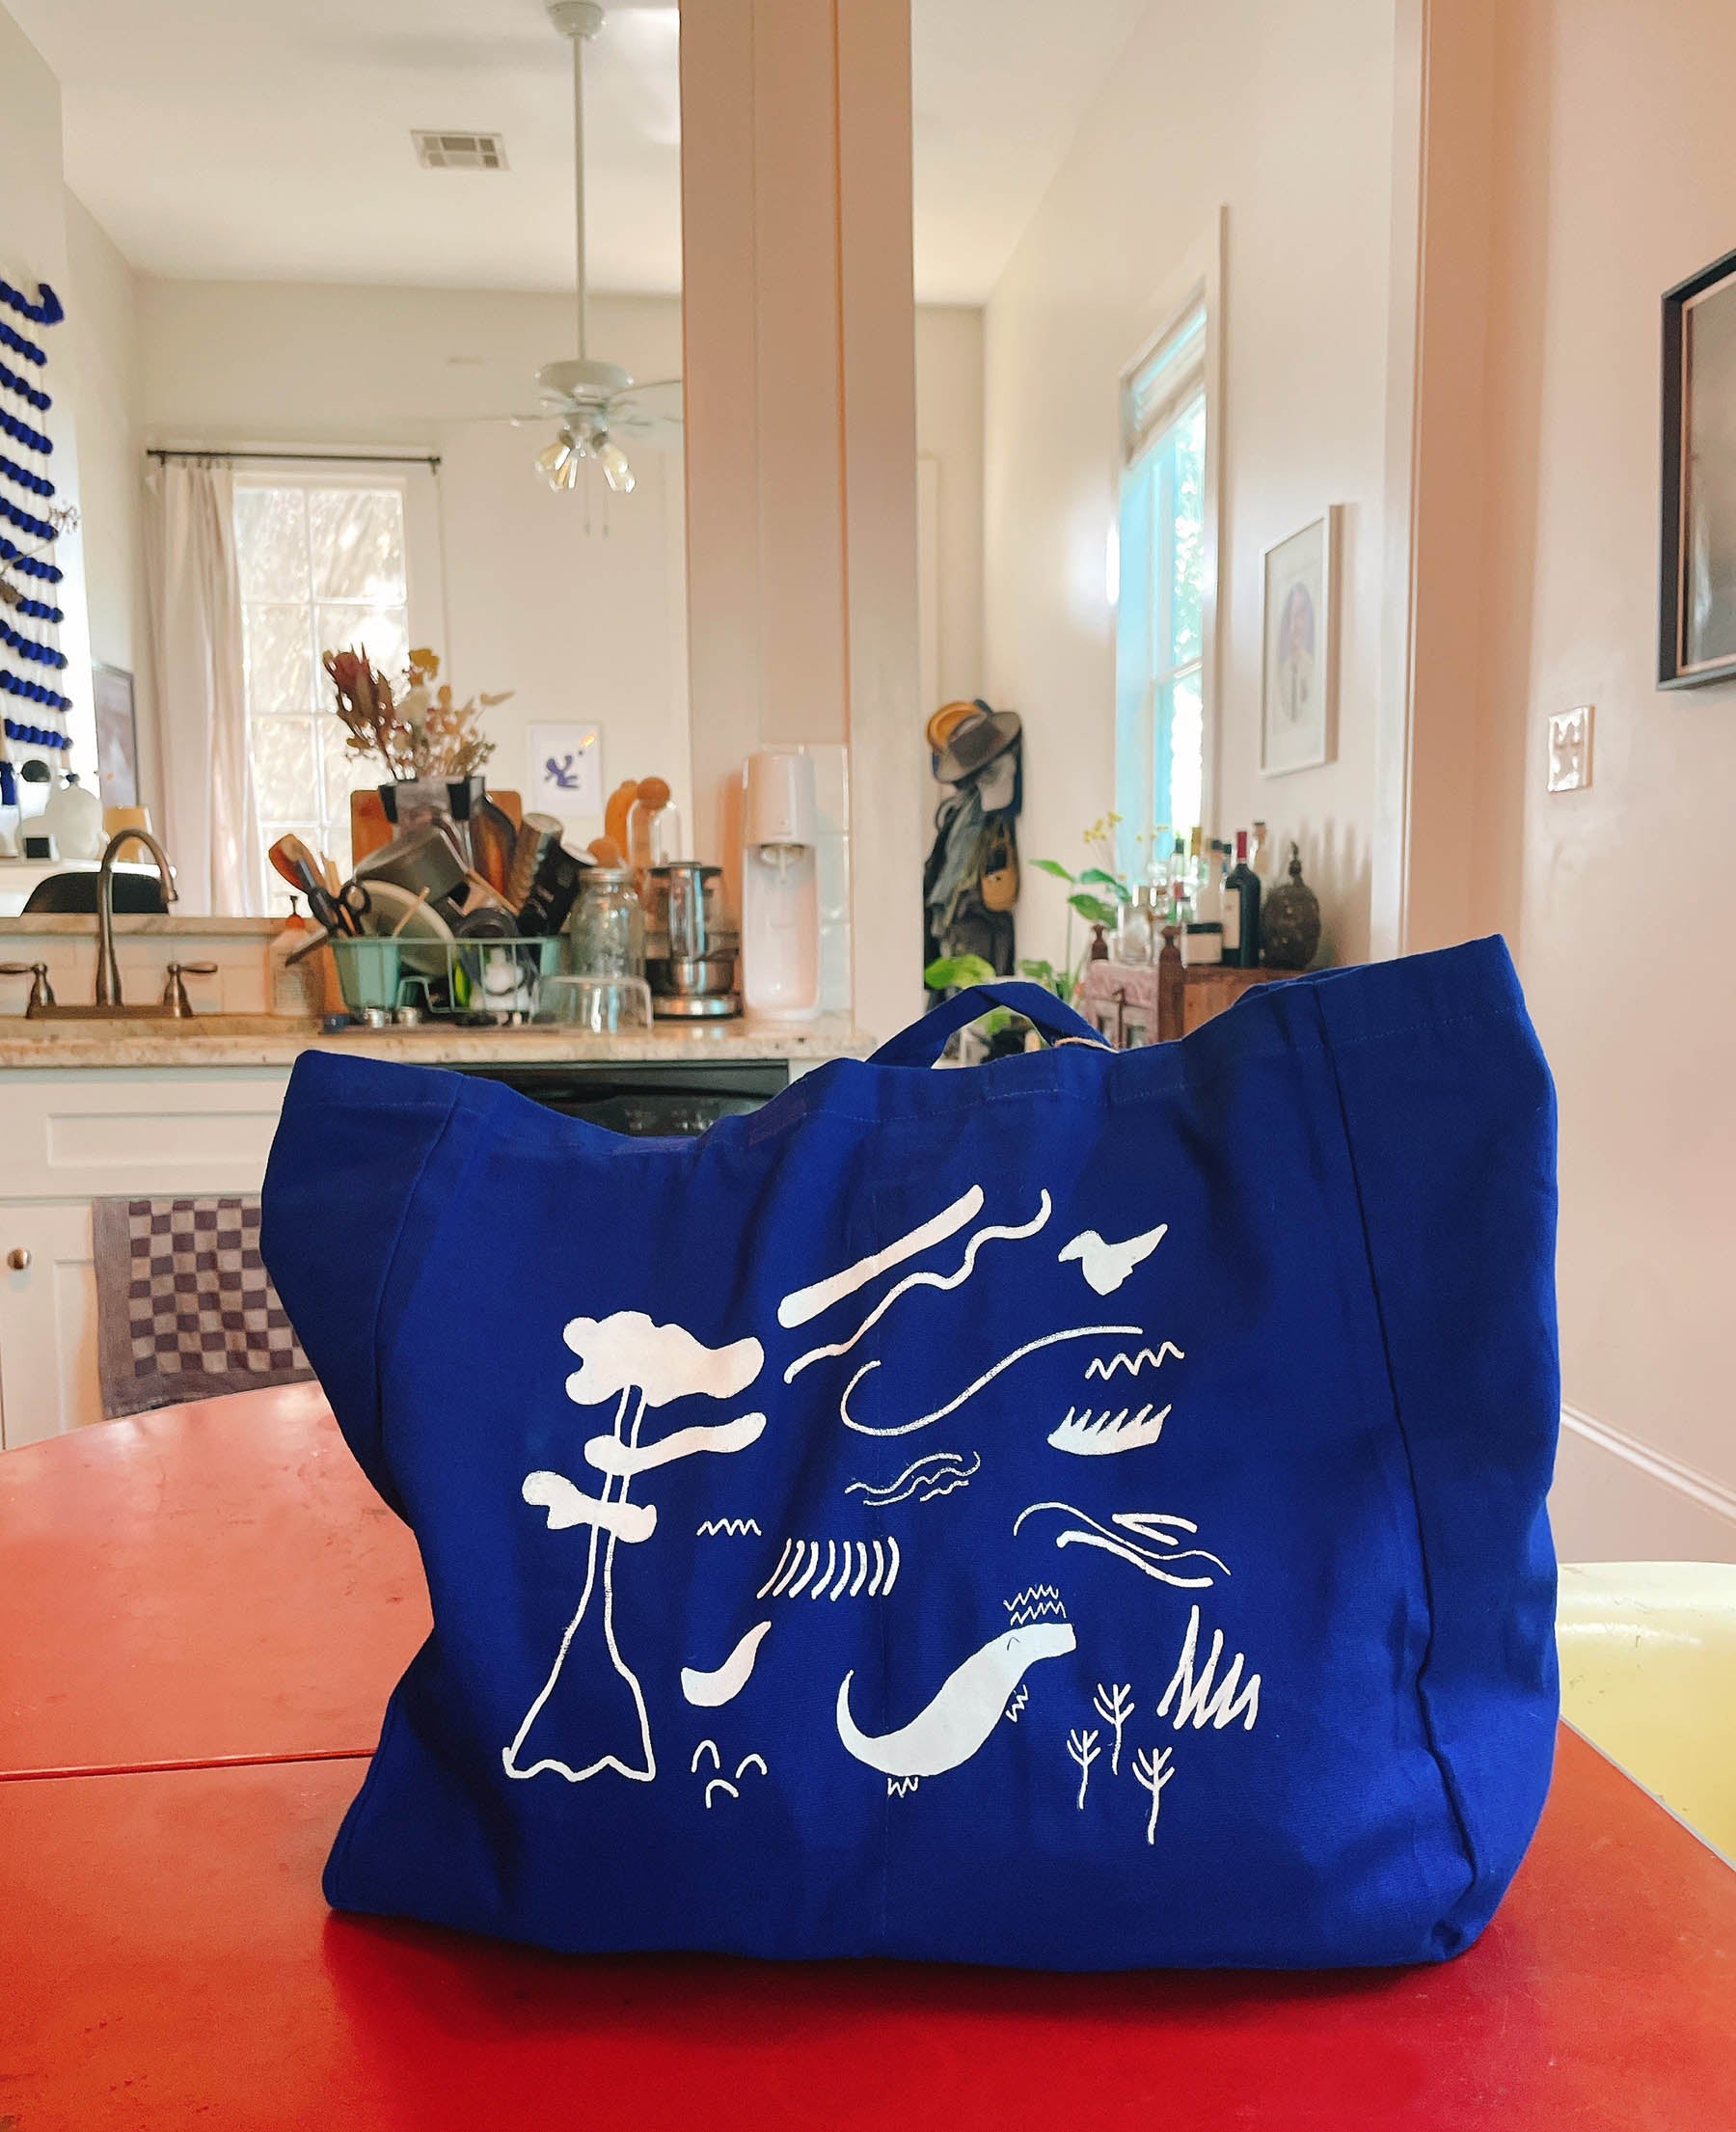 Washed linen Merci shopping bag - Ink Blue